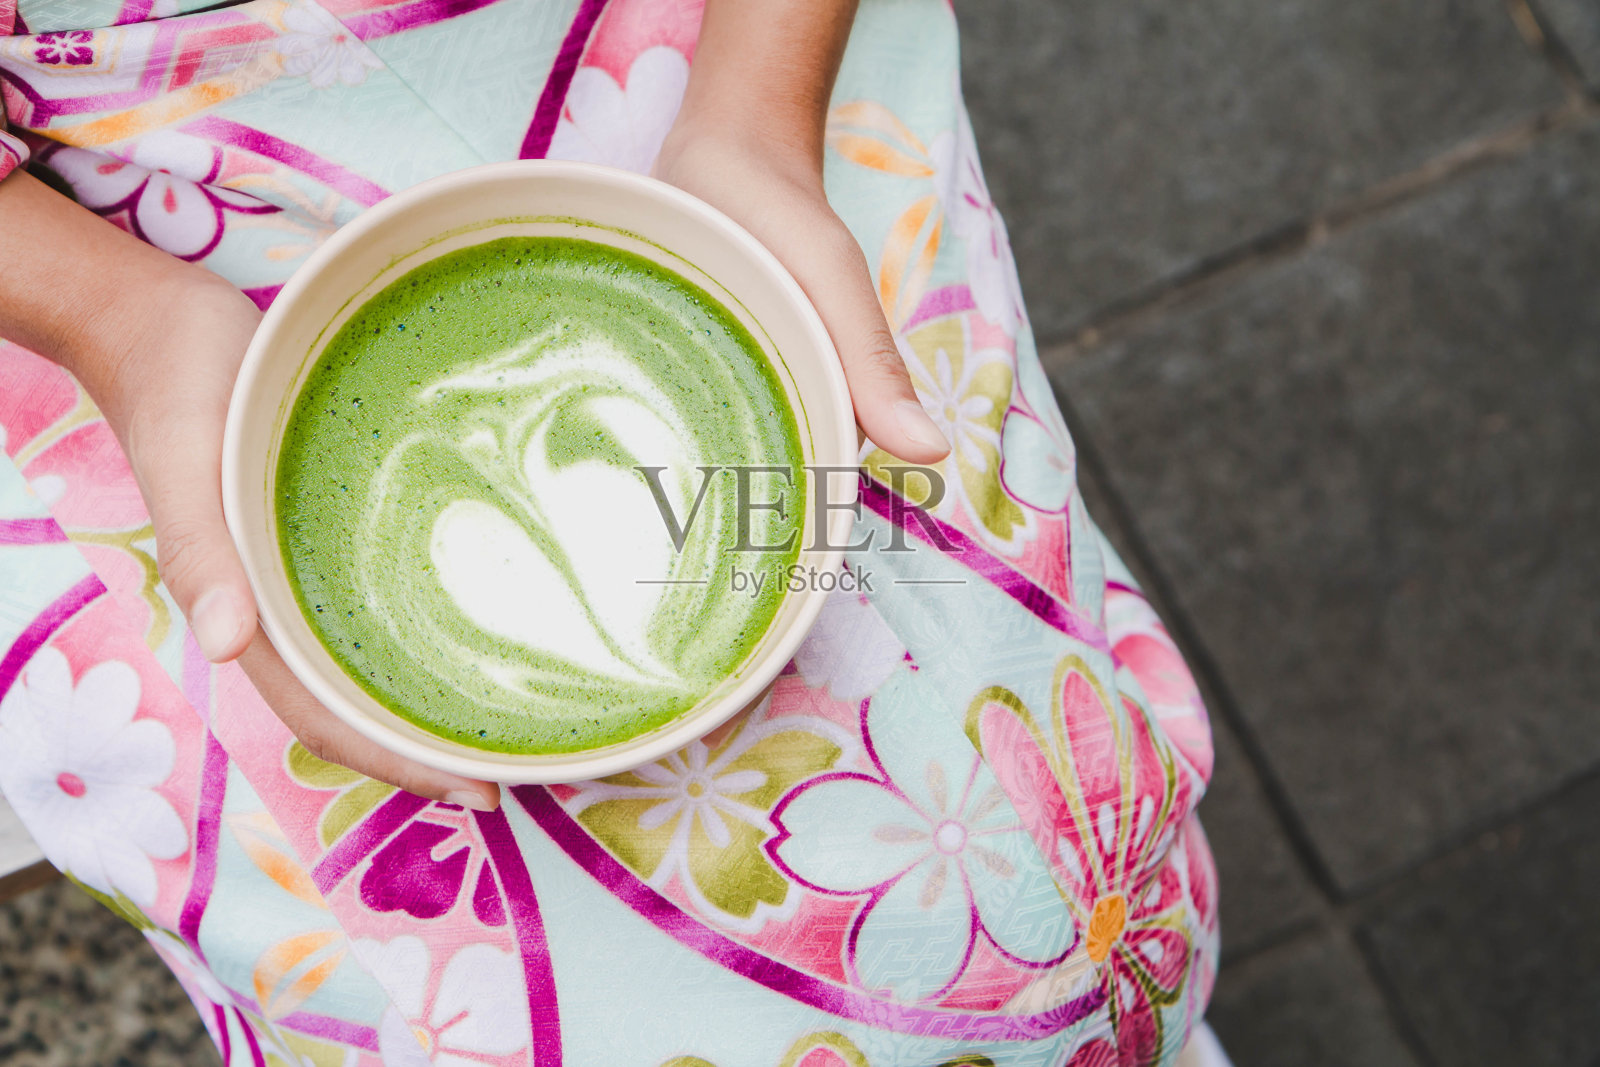 一个穿着漂亮和服的女人手里拿着一杯抹茶拿铁绿茶。日本本土饮品的概念。照片摄影图片